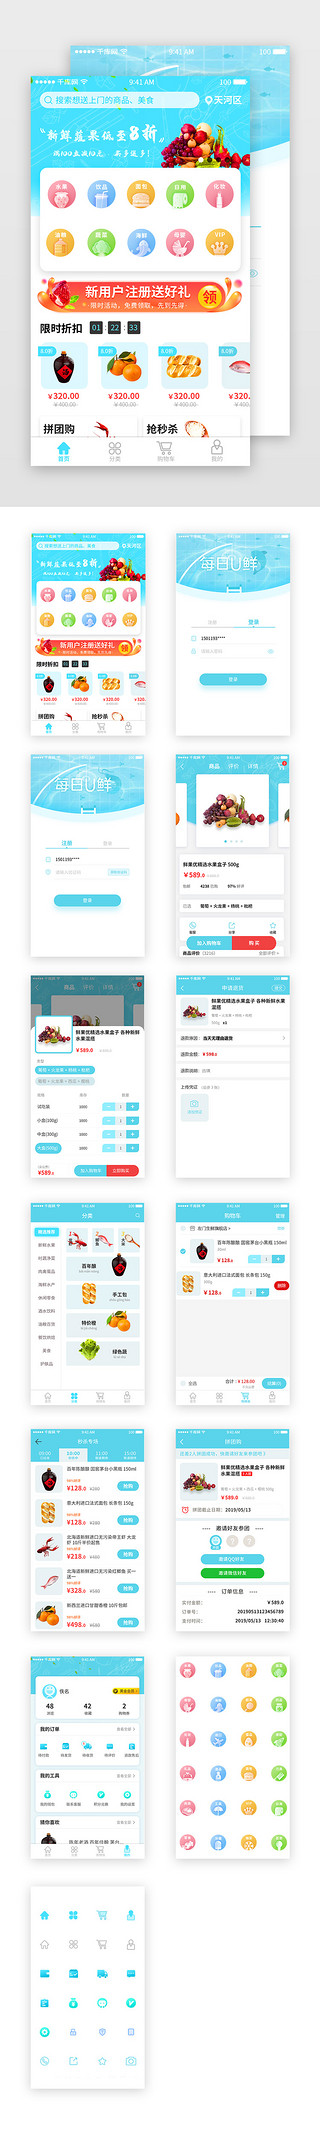 app购物套图UI设计素材_蓝色清新风生鲜电商购物APP套图